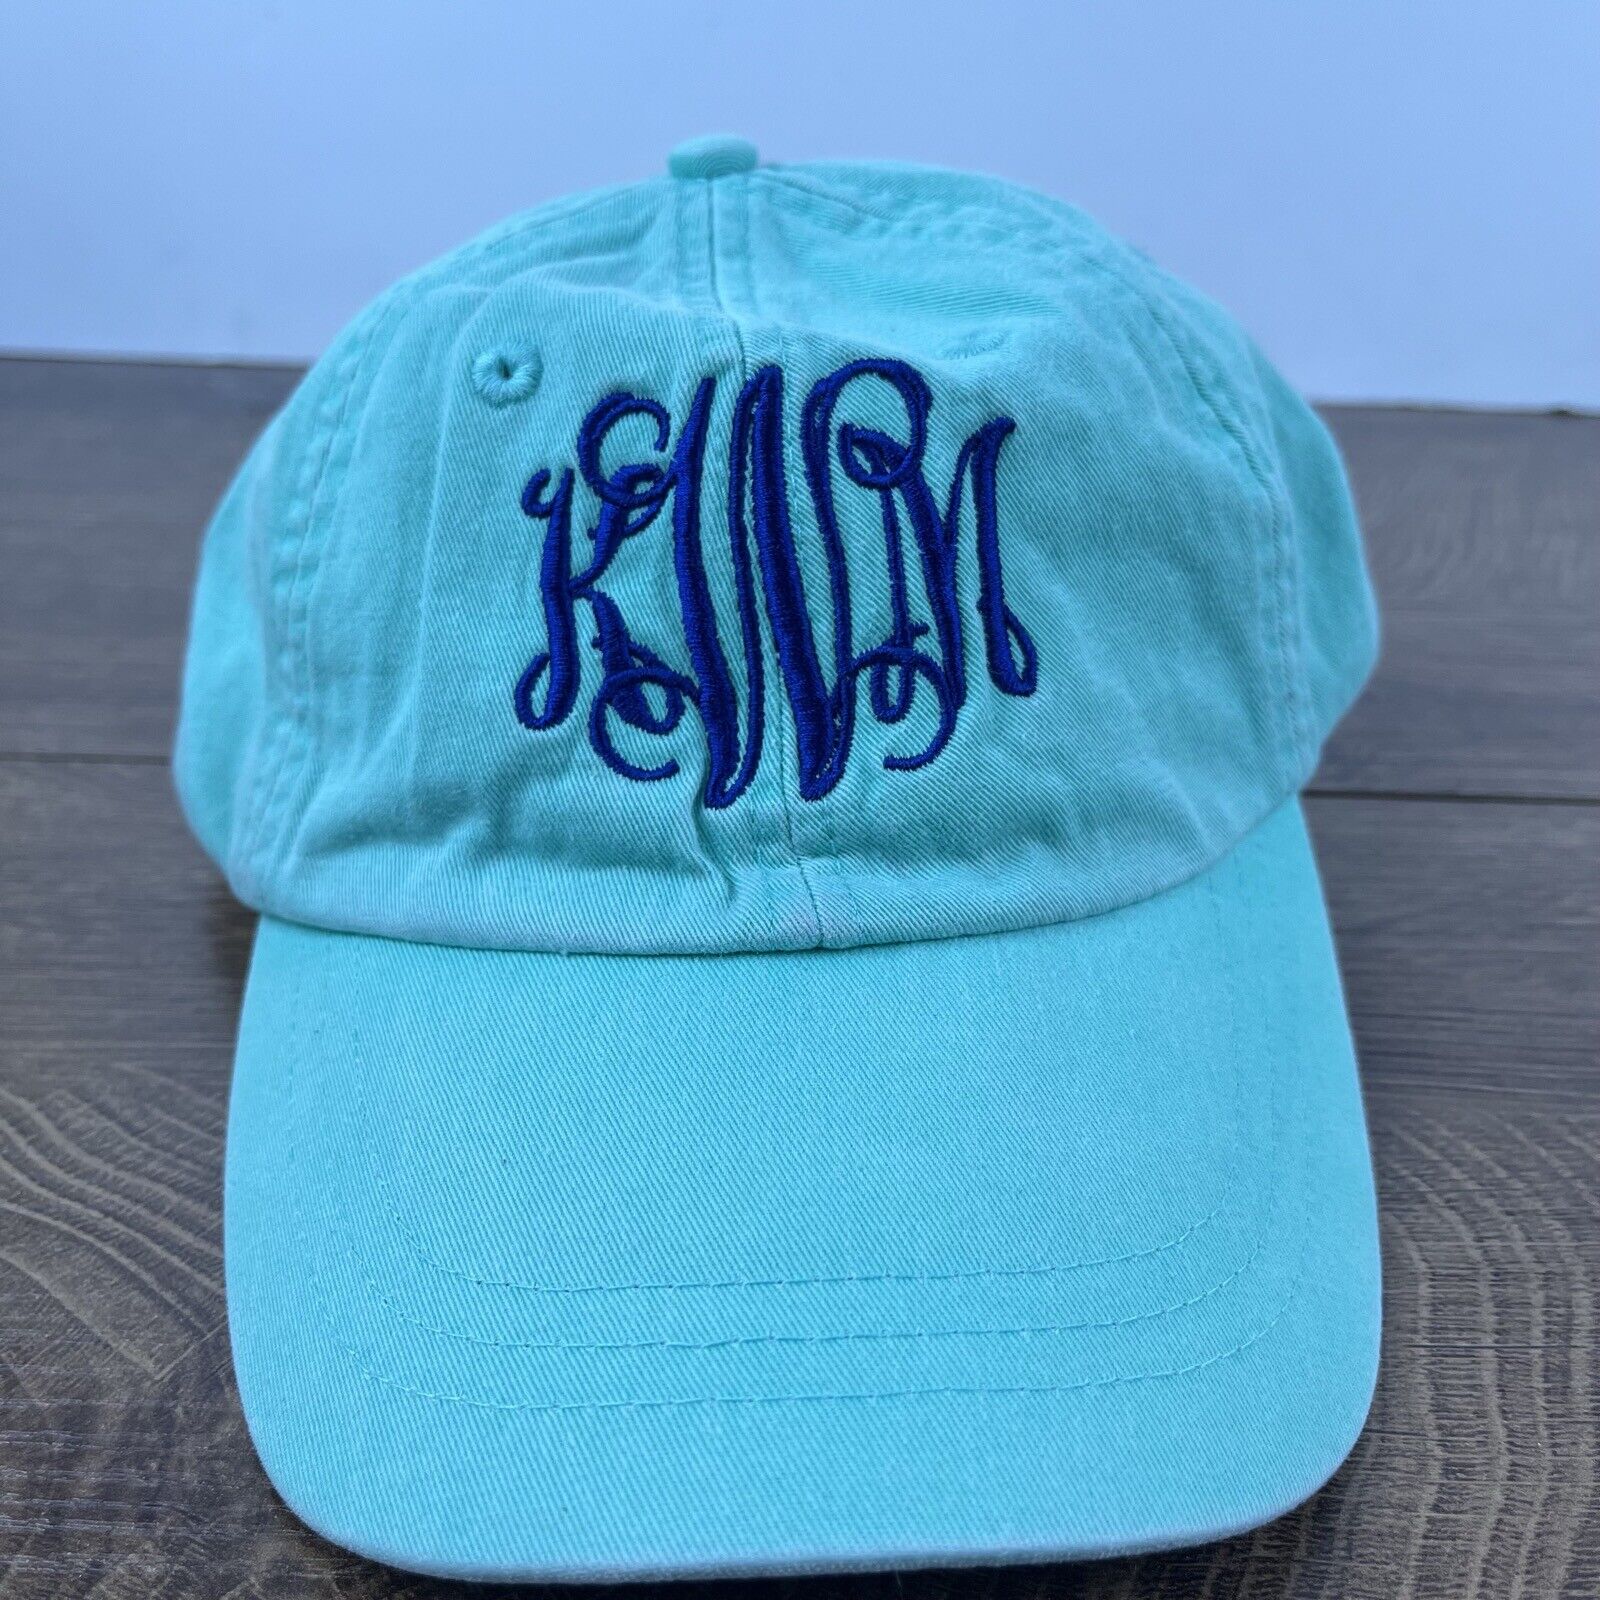 KWM Baseball Hat KWM Teal Blue Adjustable Hat Teal Adult Size Hat